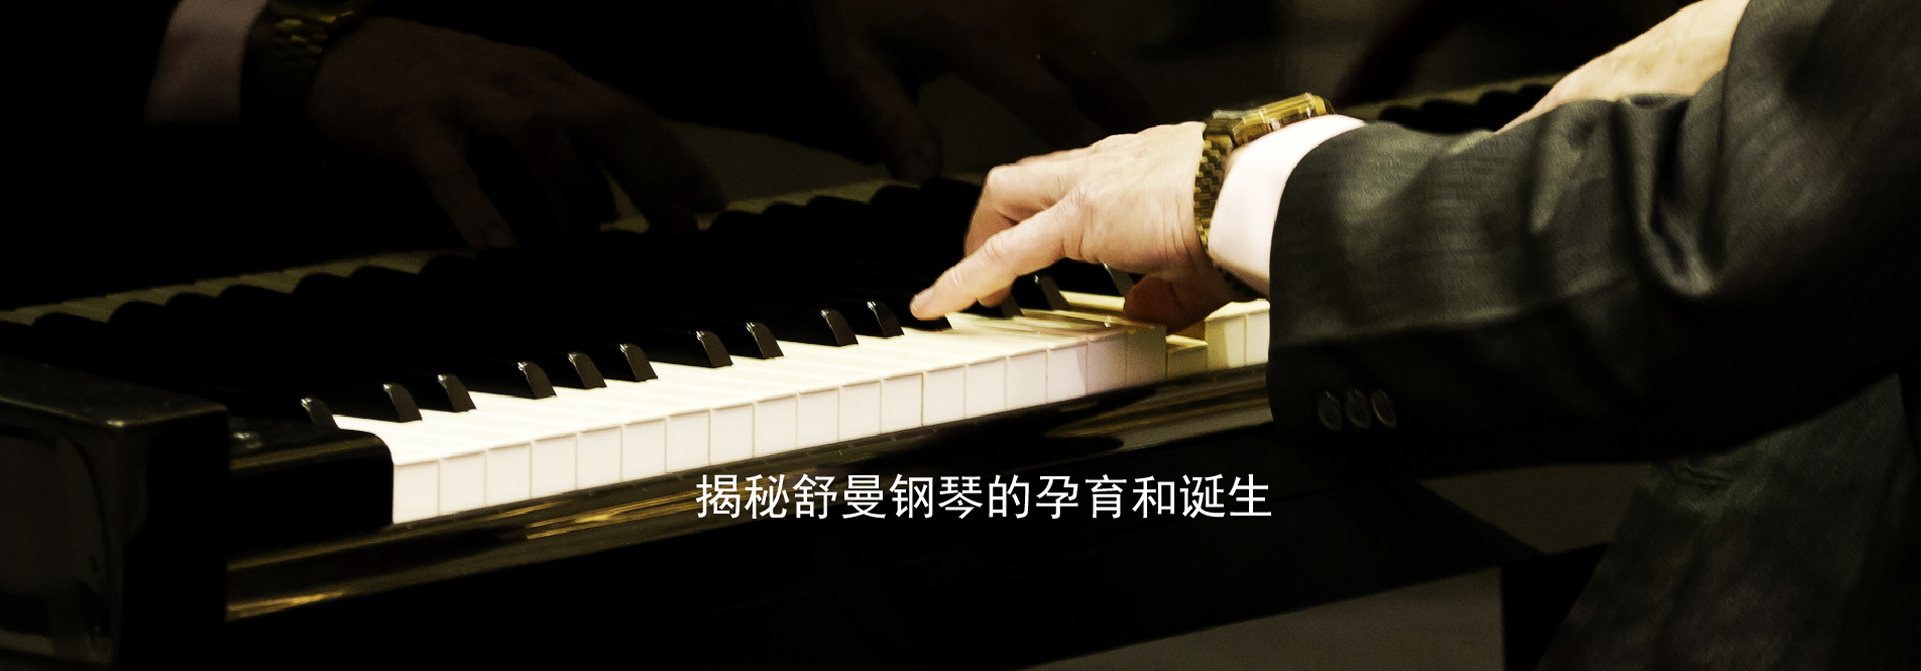 南京舒曼钢琴制造有限公司